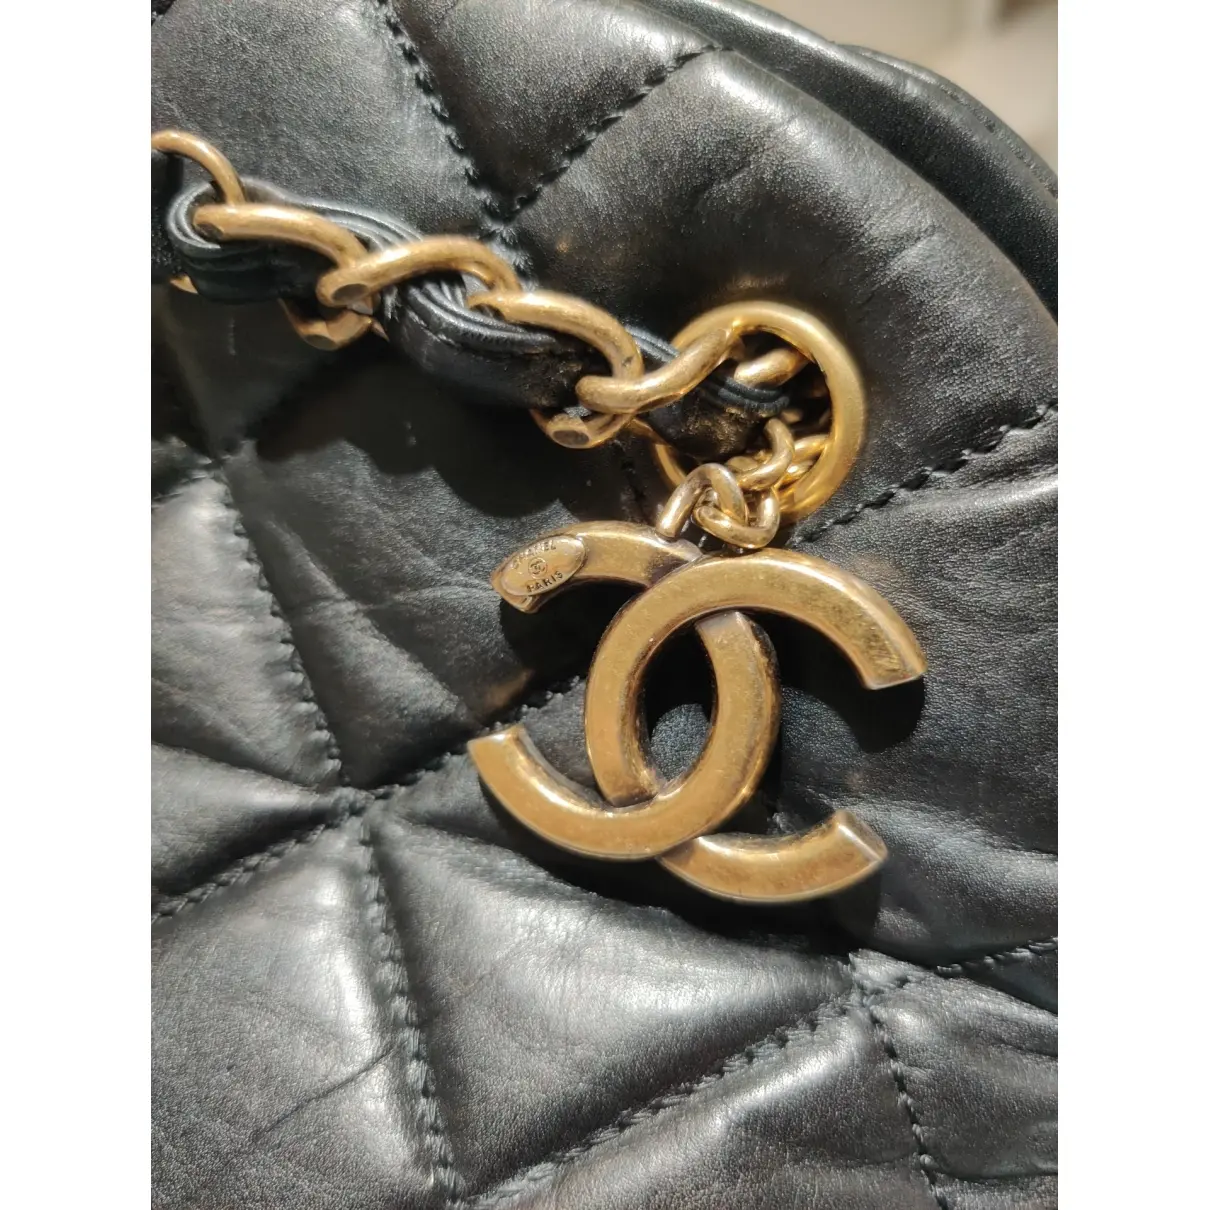 Buy Chanel Mademoiselle leather handbag online